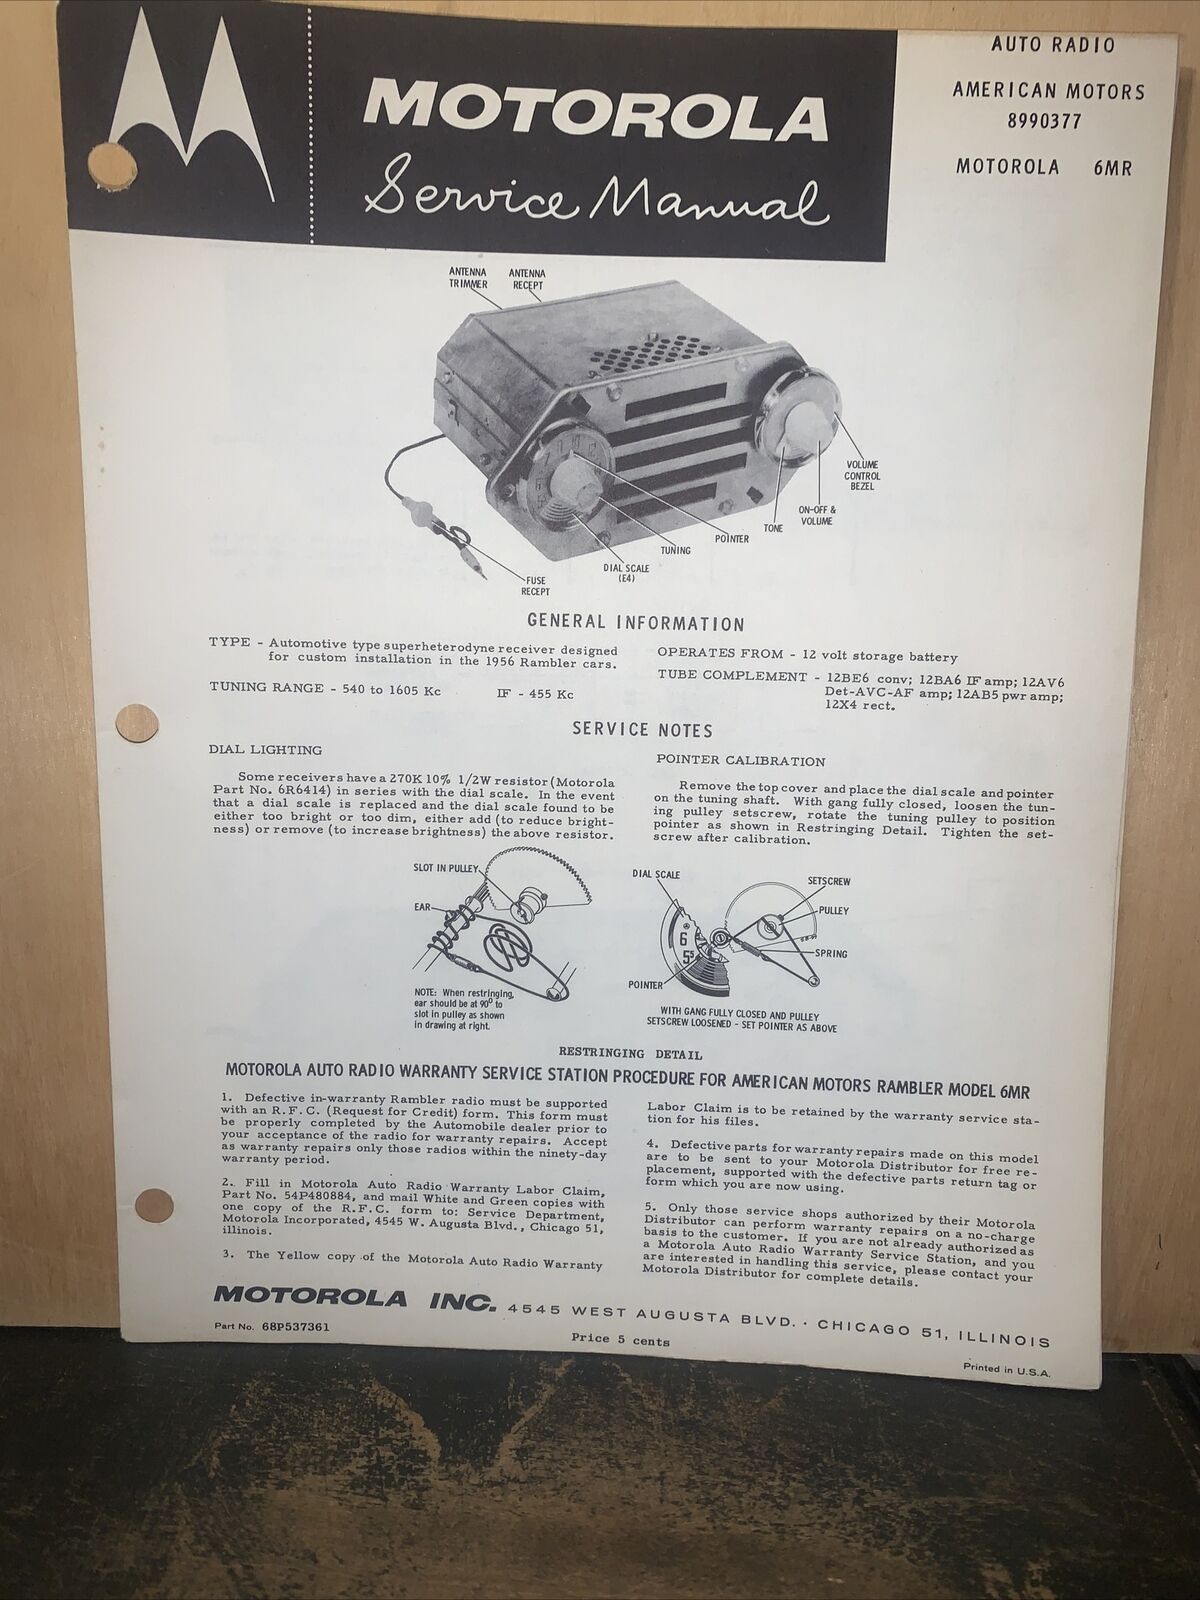 Motorola Radio Model #6MR -Service Manual- For 1956 Rambler. American Motors